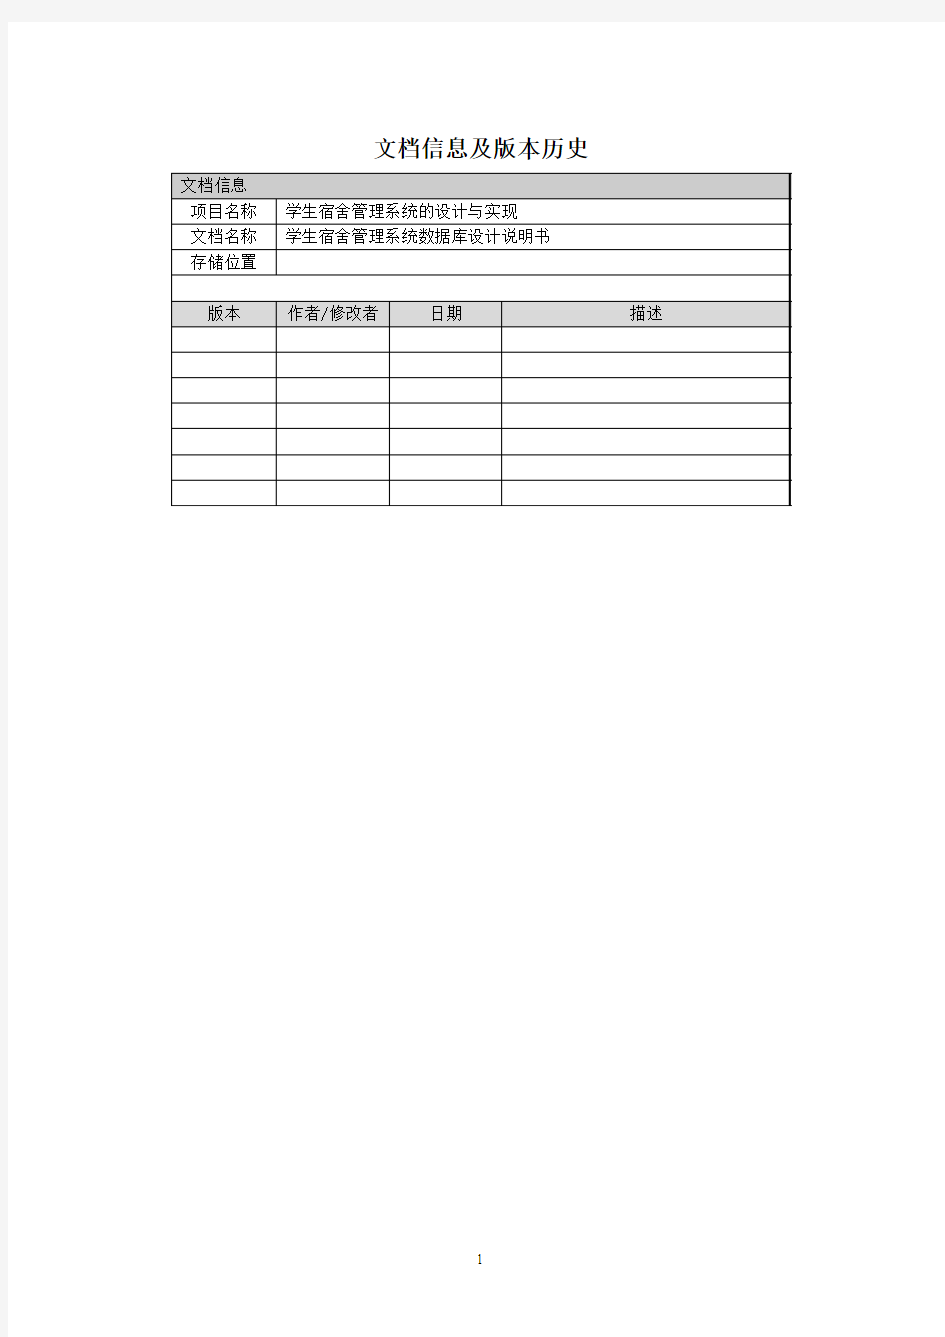 学生宿舍管理系统数据库设计文档